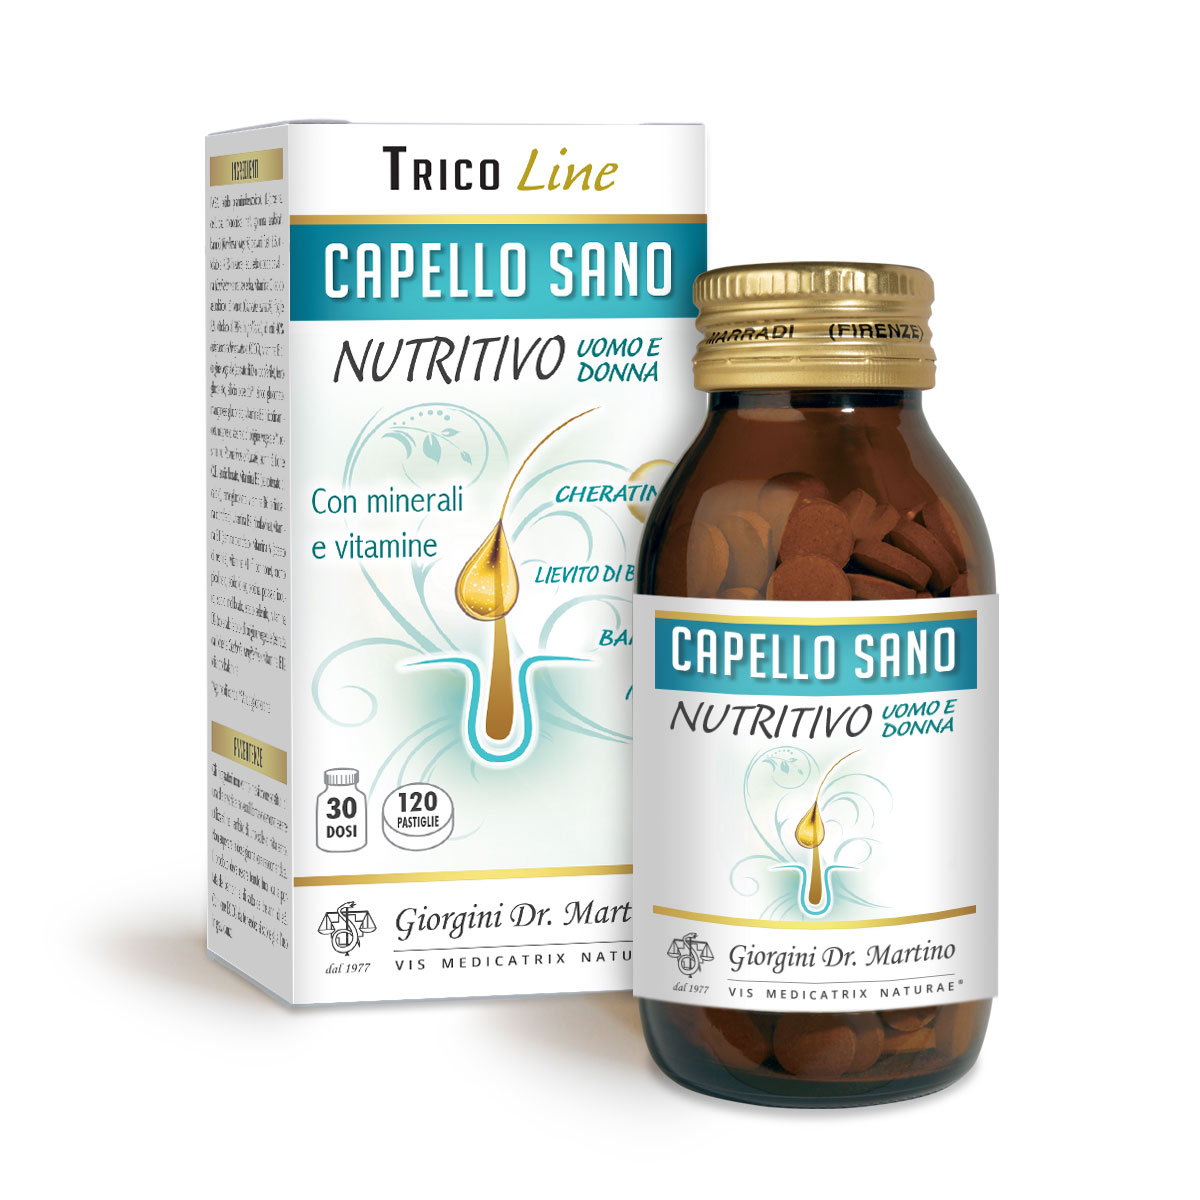 CAPELLO SANO NUTRITIVO 72g - 120 pastiglie da 600 mg